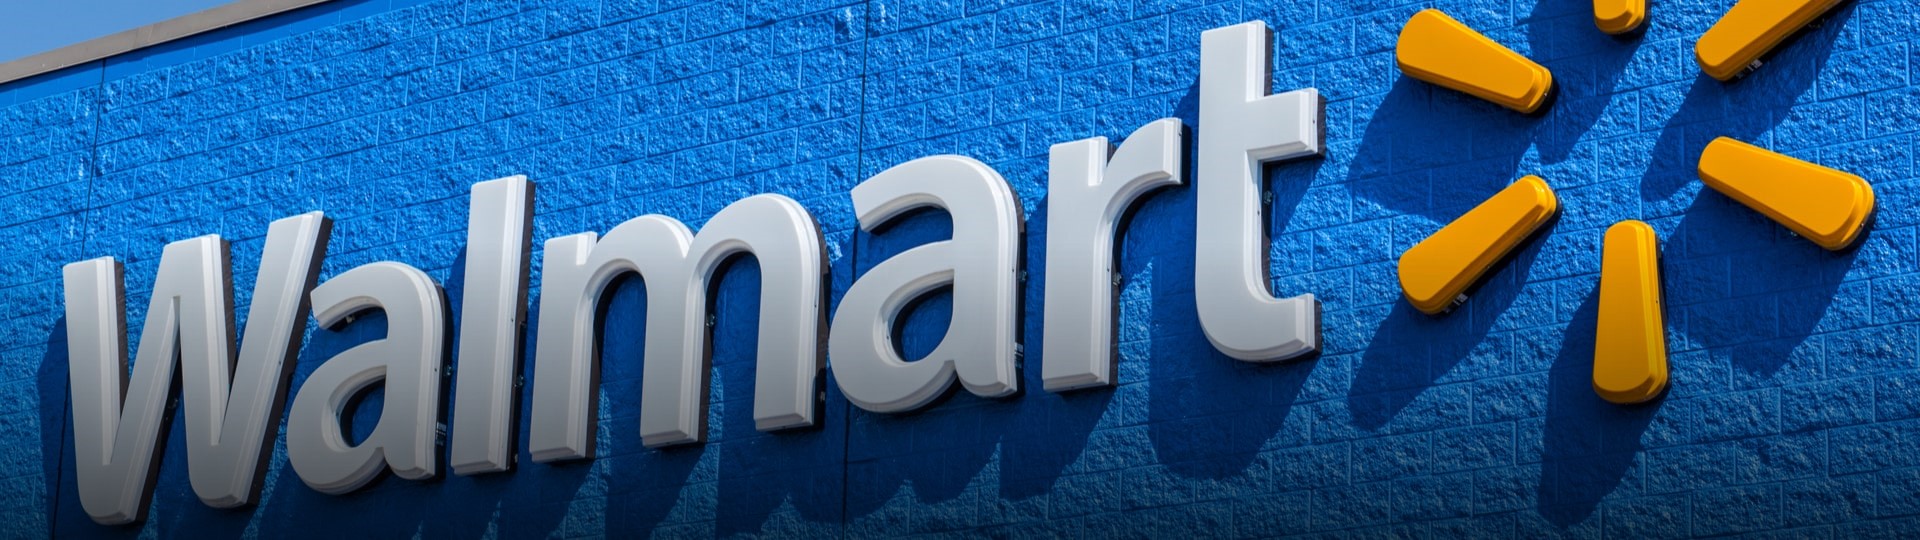 Walmart zvýšil za čtvrtletí provozní zisk o více než pětinu a zvýšil výhled